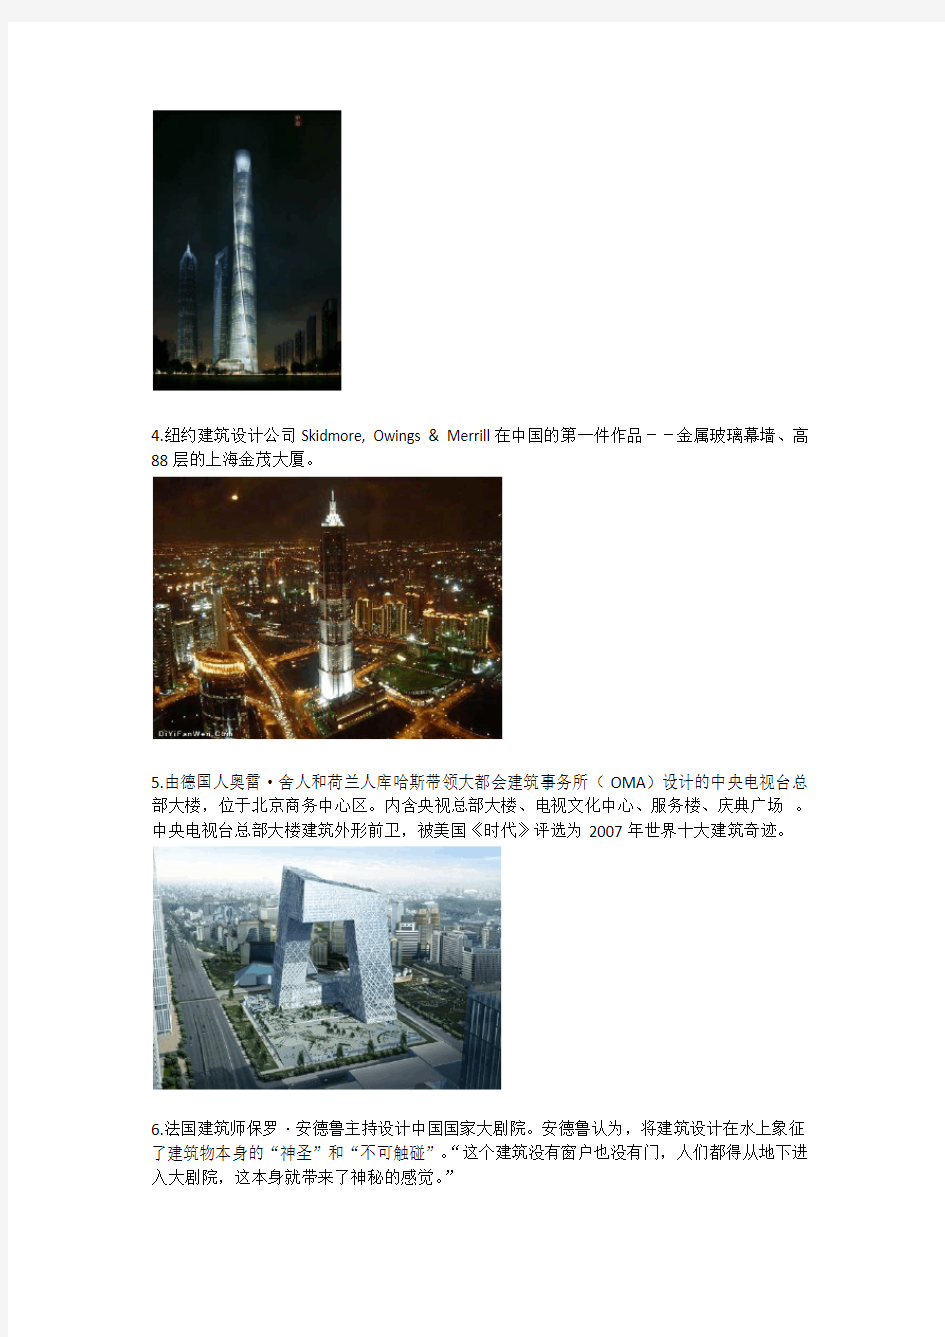 国际建筑师中国项目